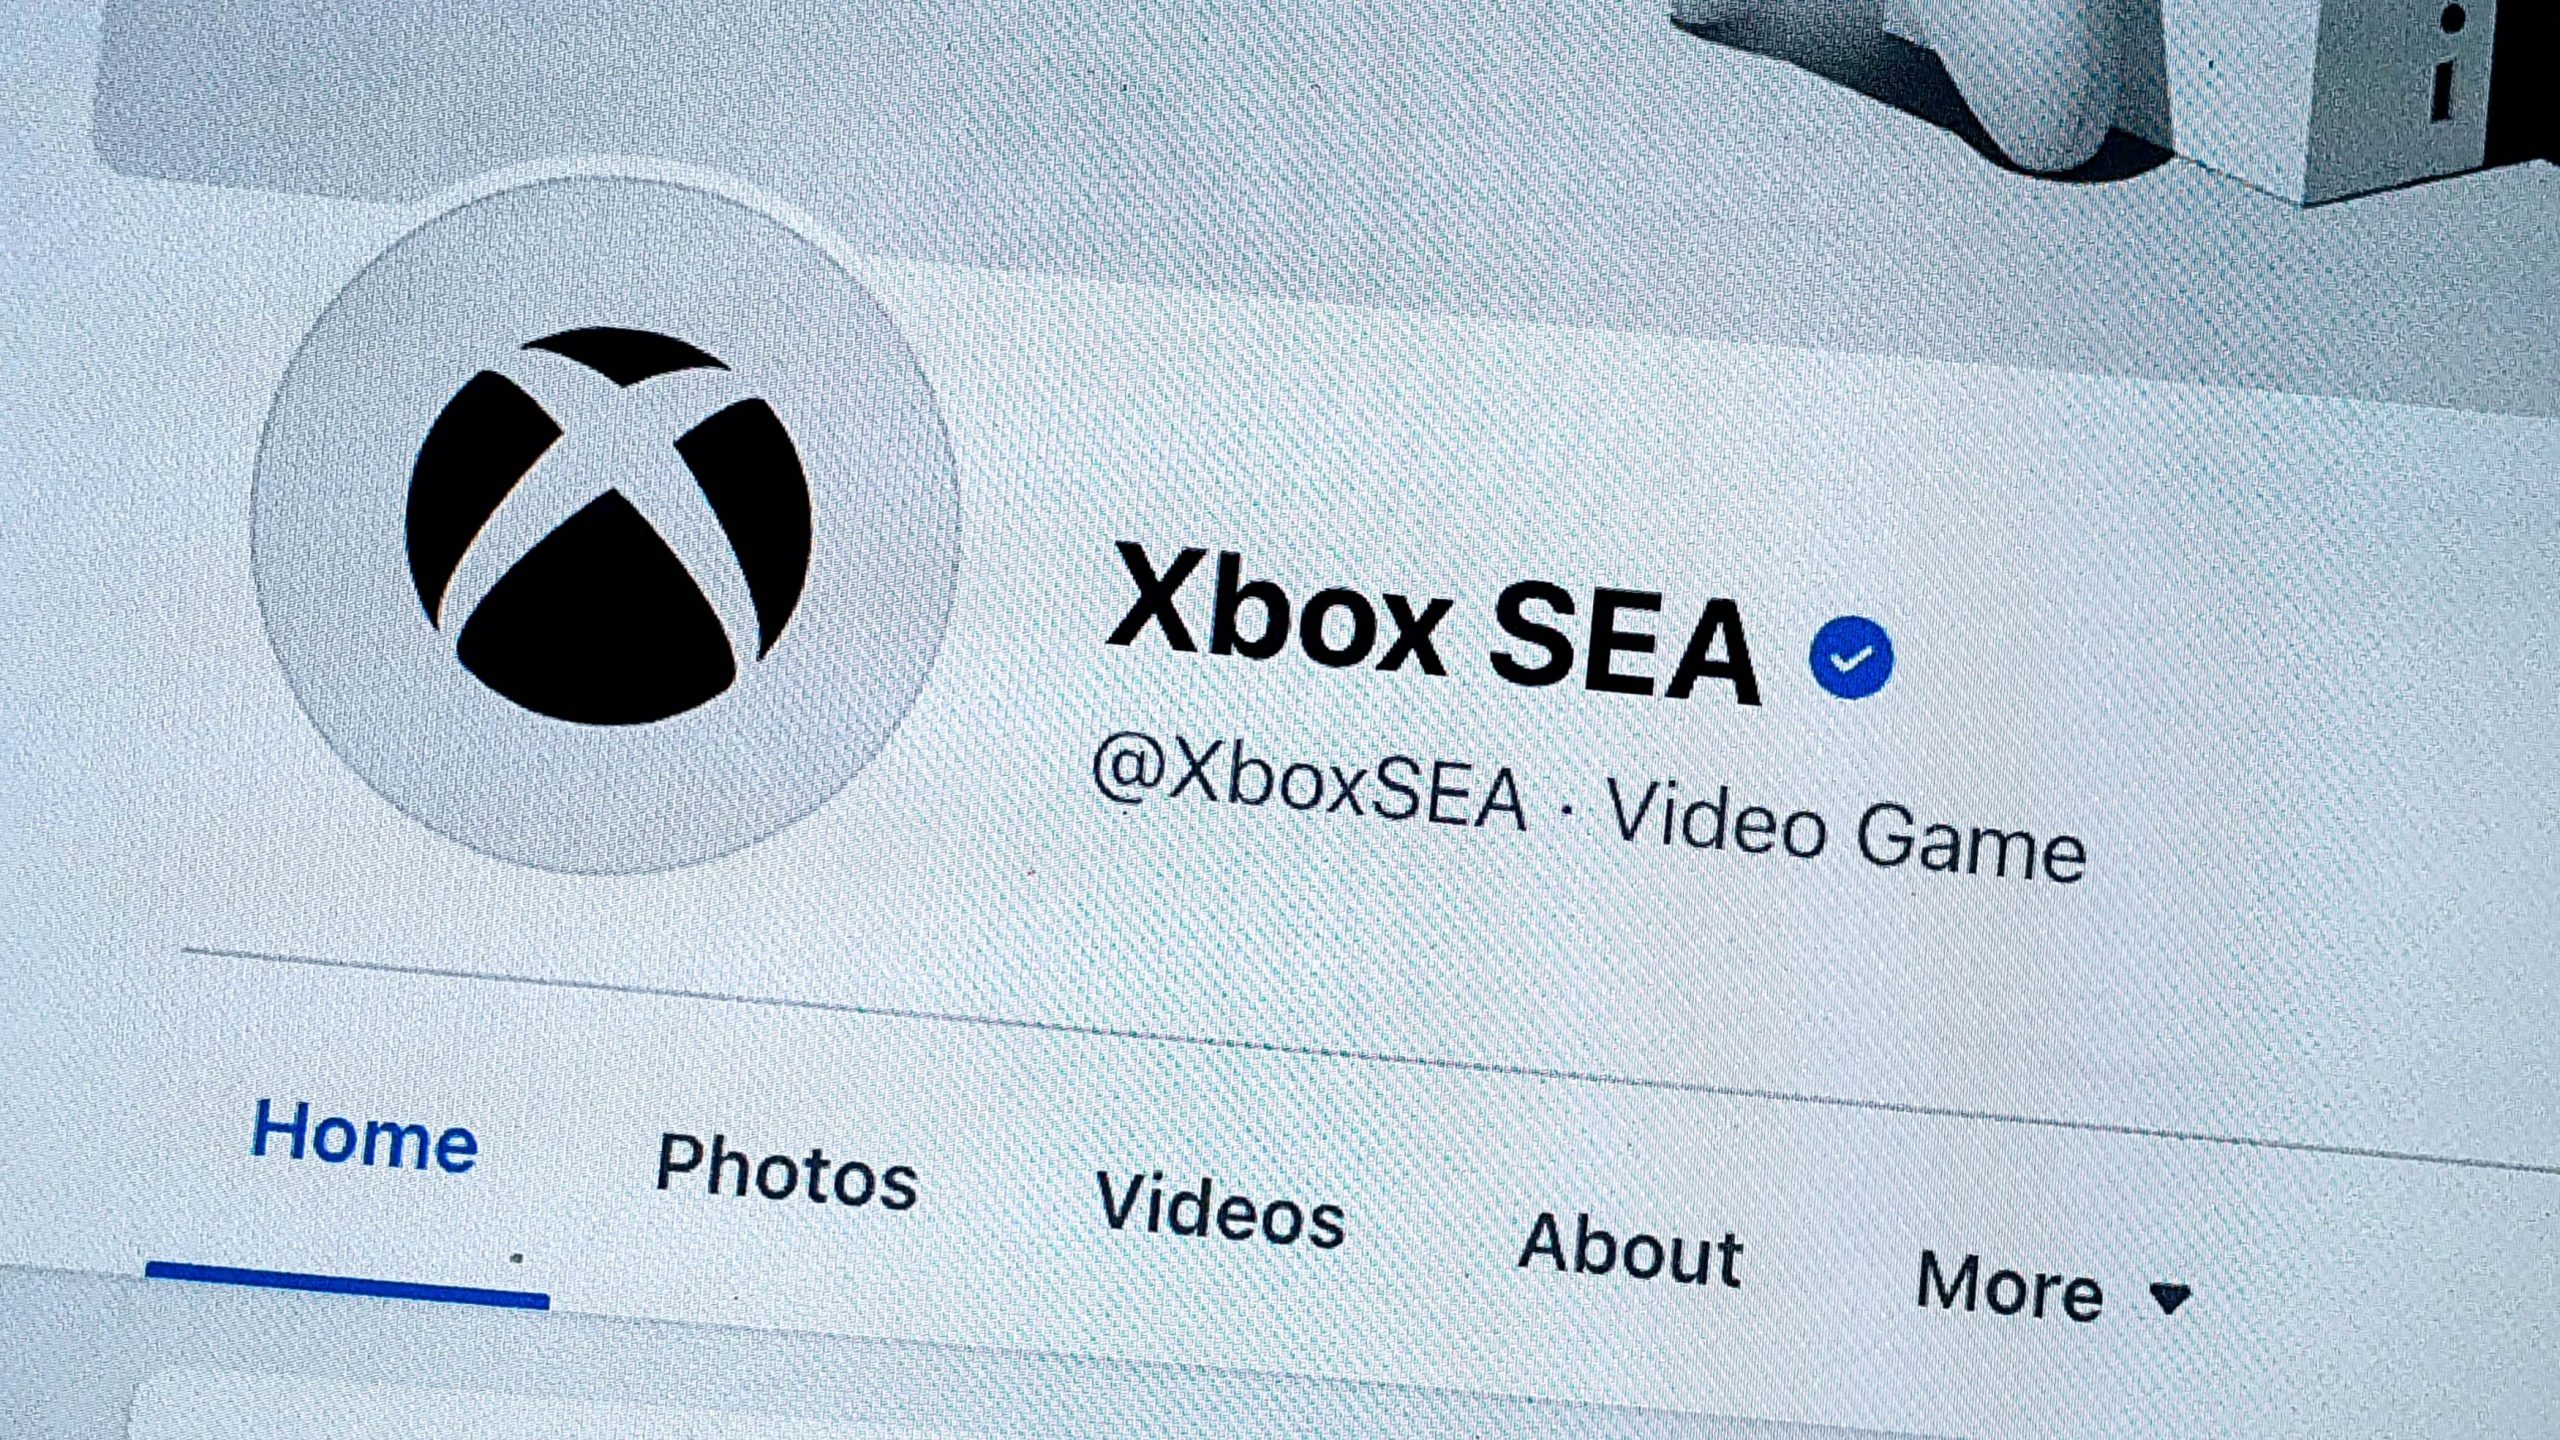 Xbox Singapura Mengubah Nama Akaun Sosial Ke Xbox SEA – Mula Berkongsi Dalam Bahasa Malaysia